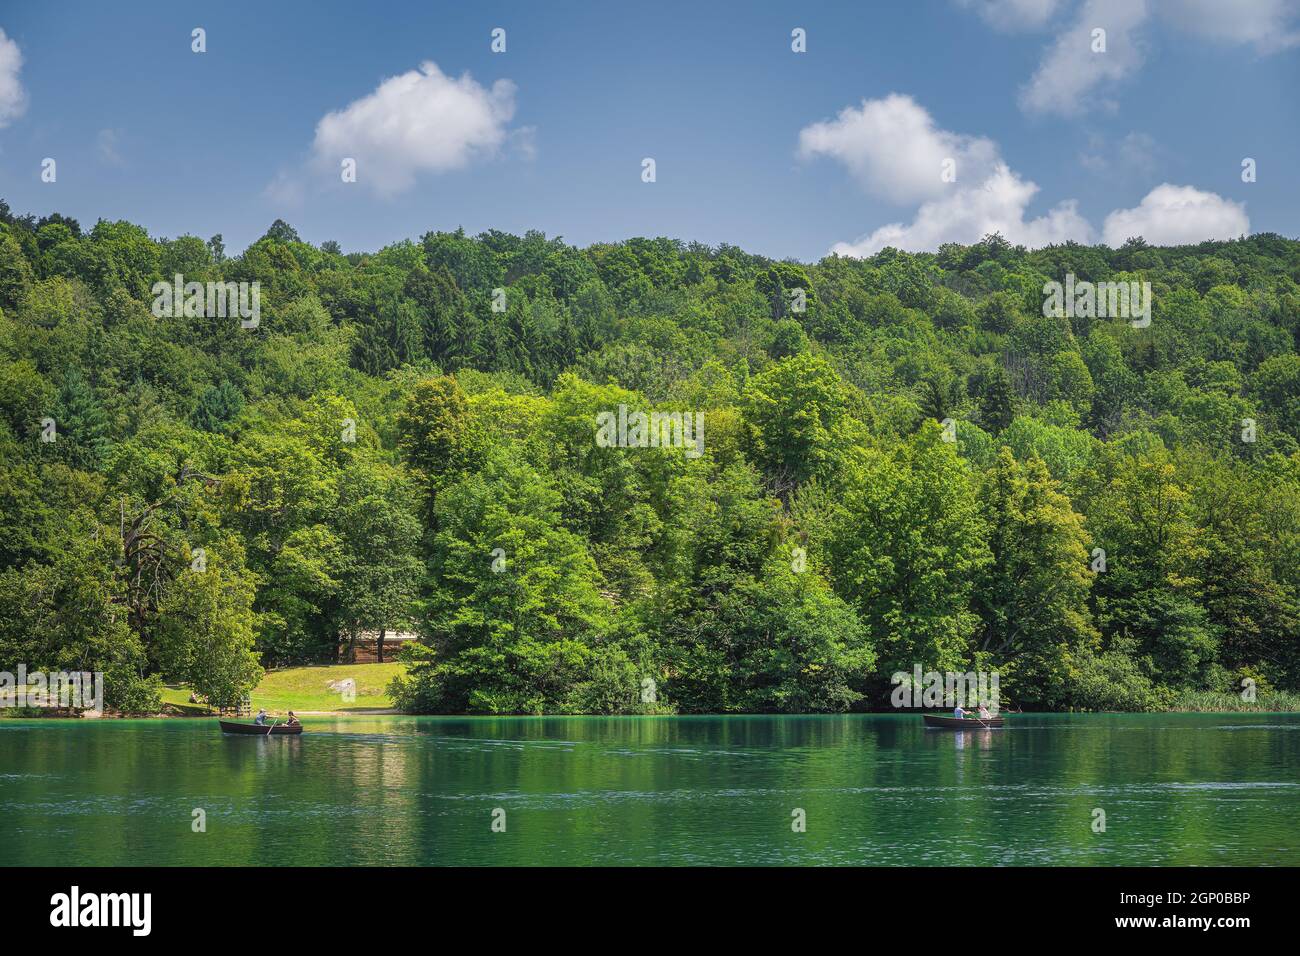 Les touristes pagayent dans deux bateaux sur le lac vert émeraude à Parc national des lacs de Plitvice Patrimoine mondial de l'UNESCO en Croatie Banque D'Images